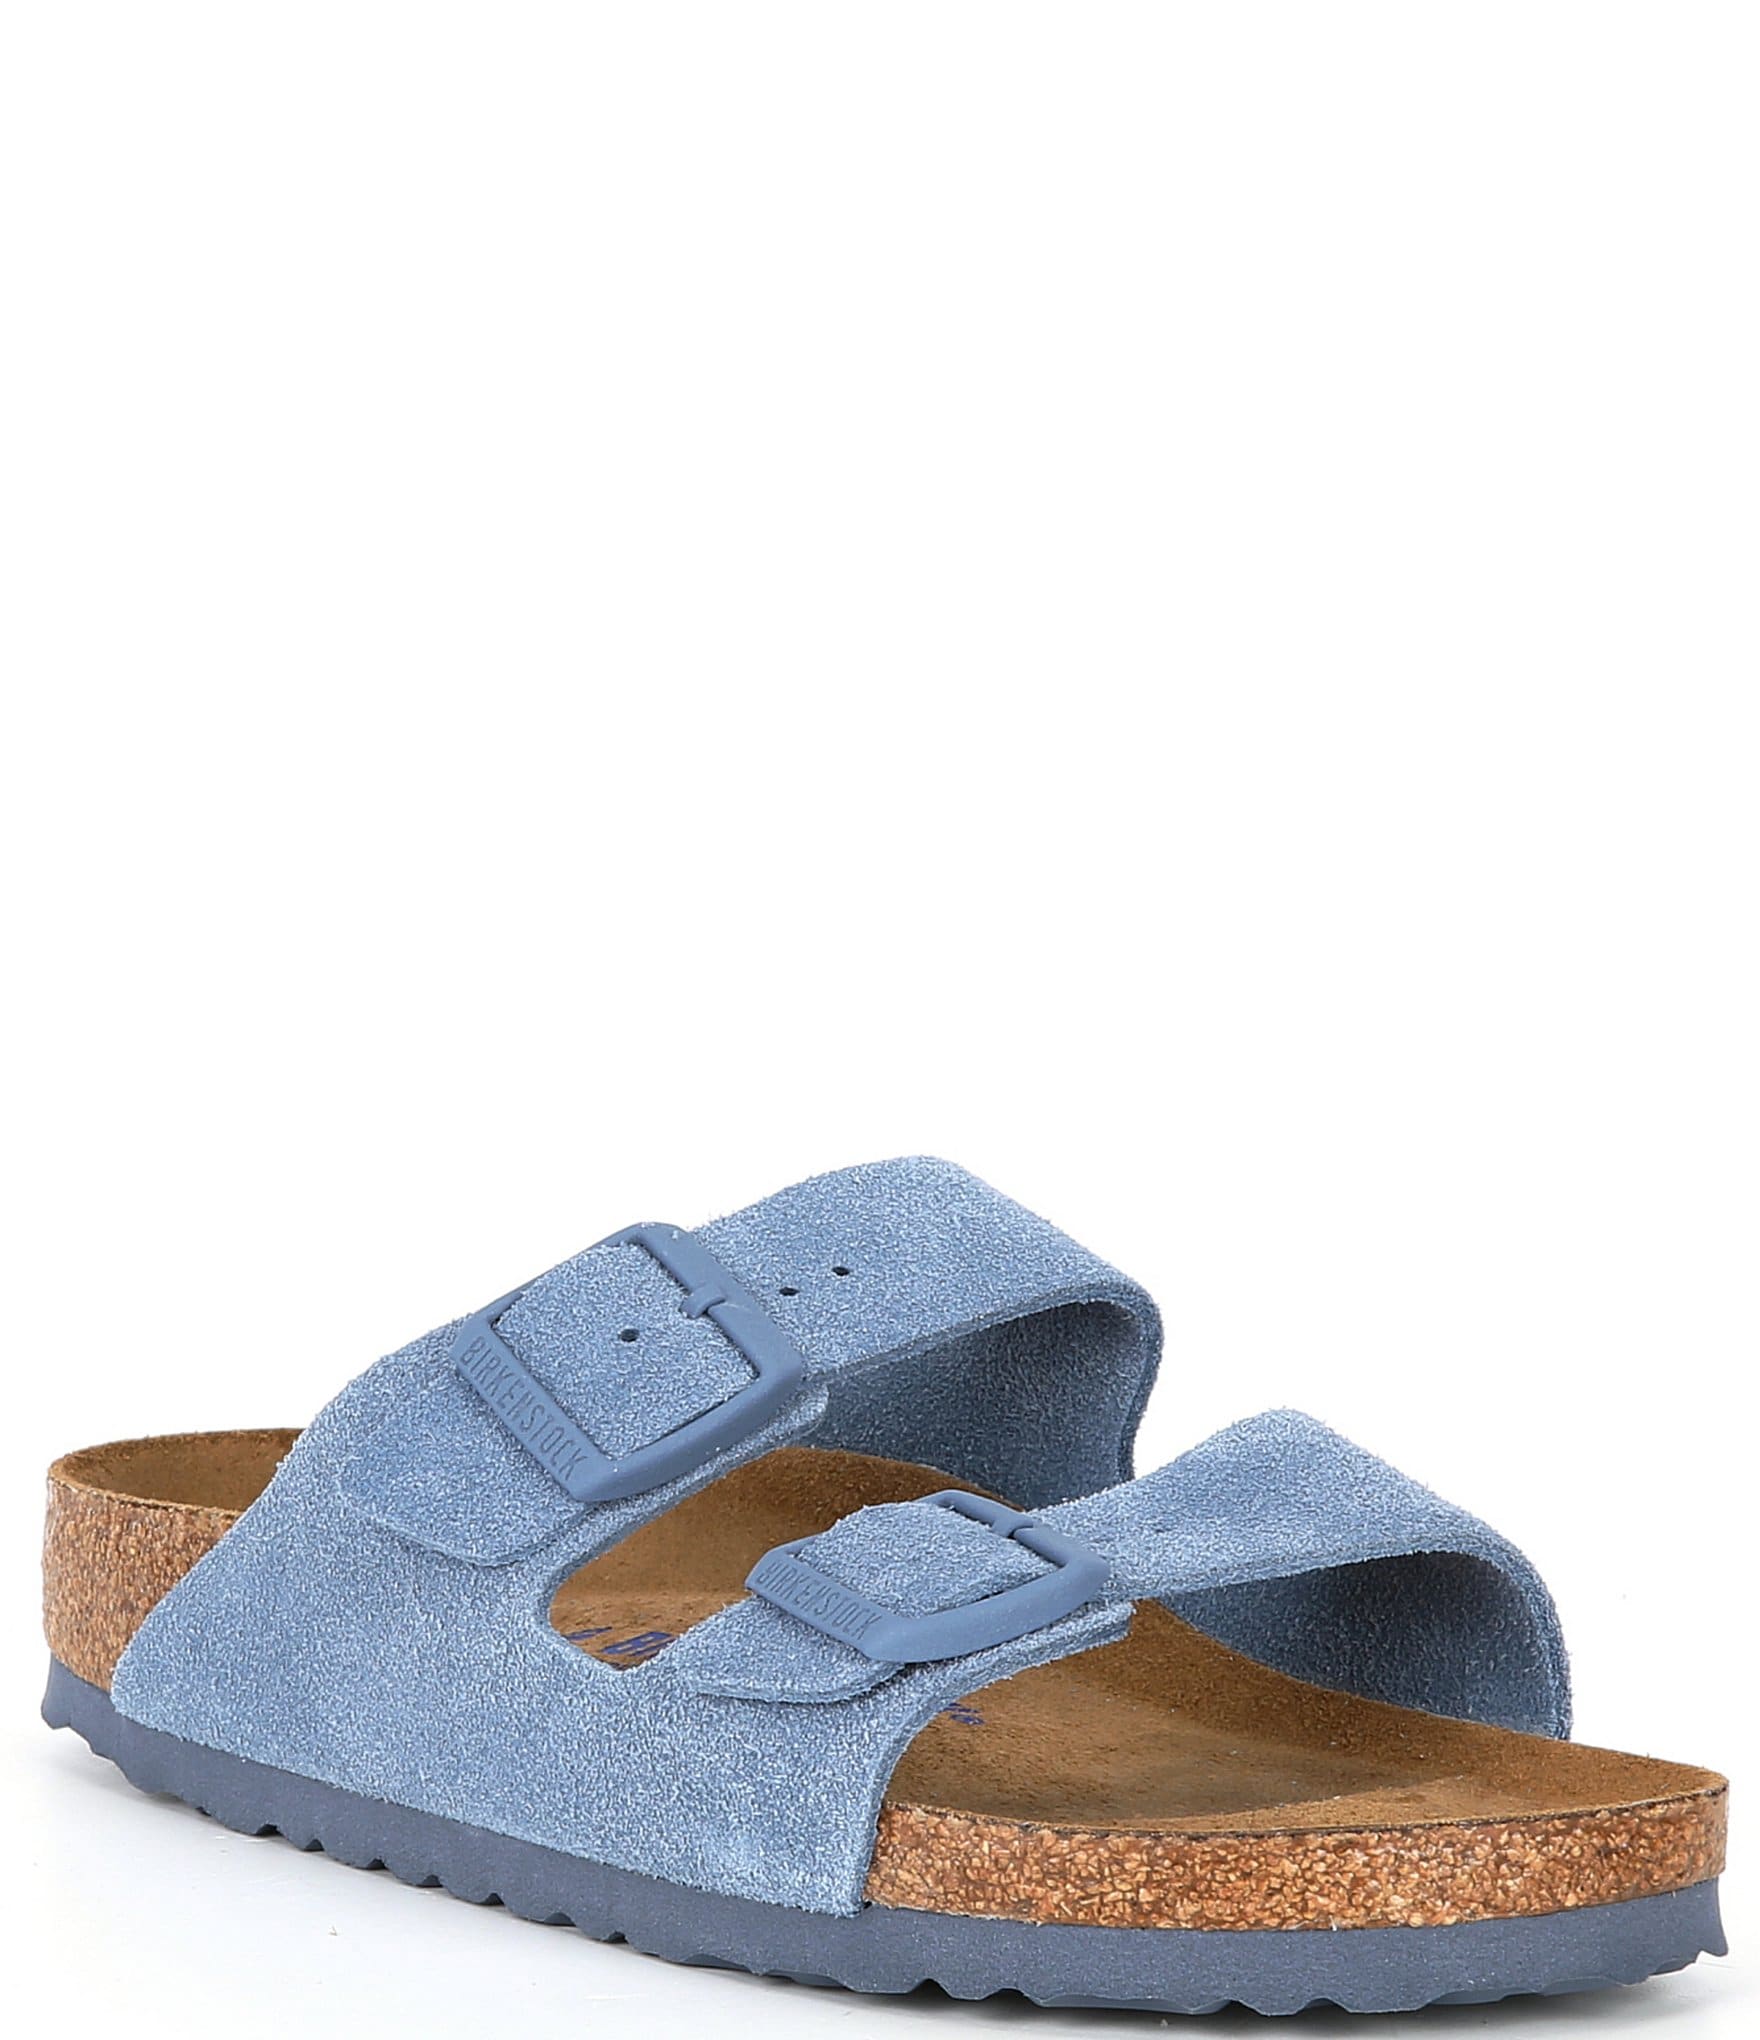 BIRKENSTOCK Gizeh Men Blue Sandals - Buy BIRKENSTOCK Gizeh Men Blue Sandals  Online at Best Price - Shop Online for Footwears in India | Flipkart.com